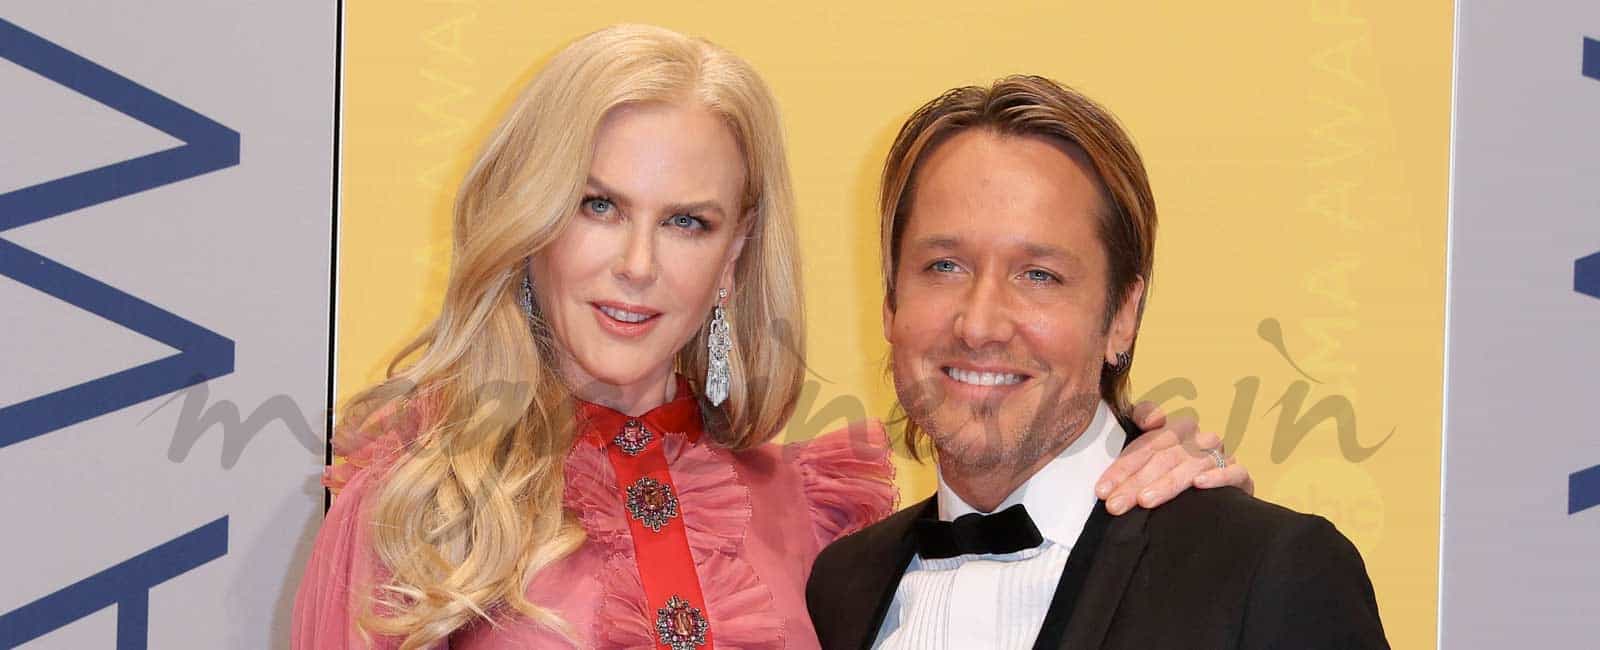 Nicole Kidman y Keith Urban desmintiendo su crisis, adoptan un niño indio